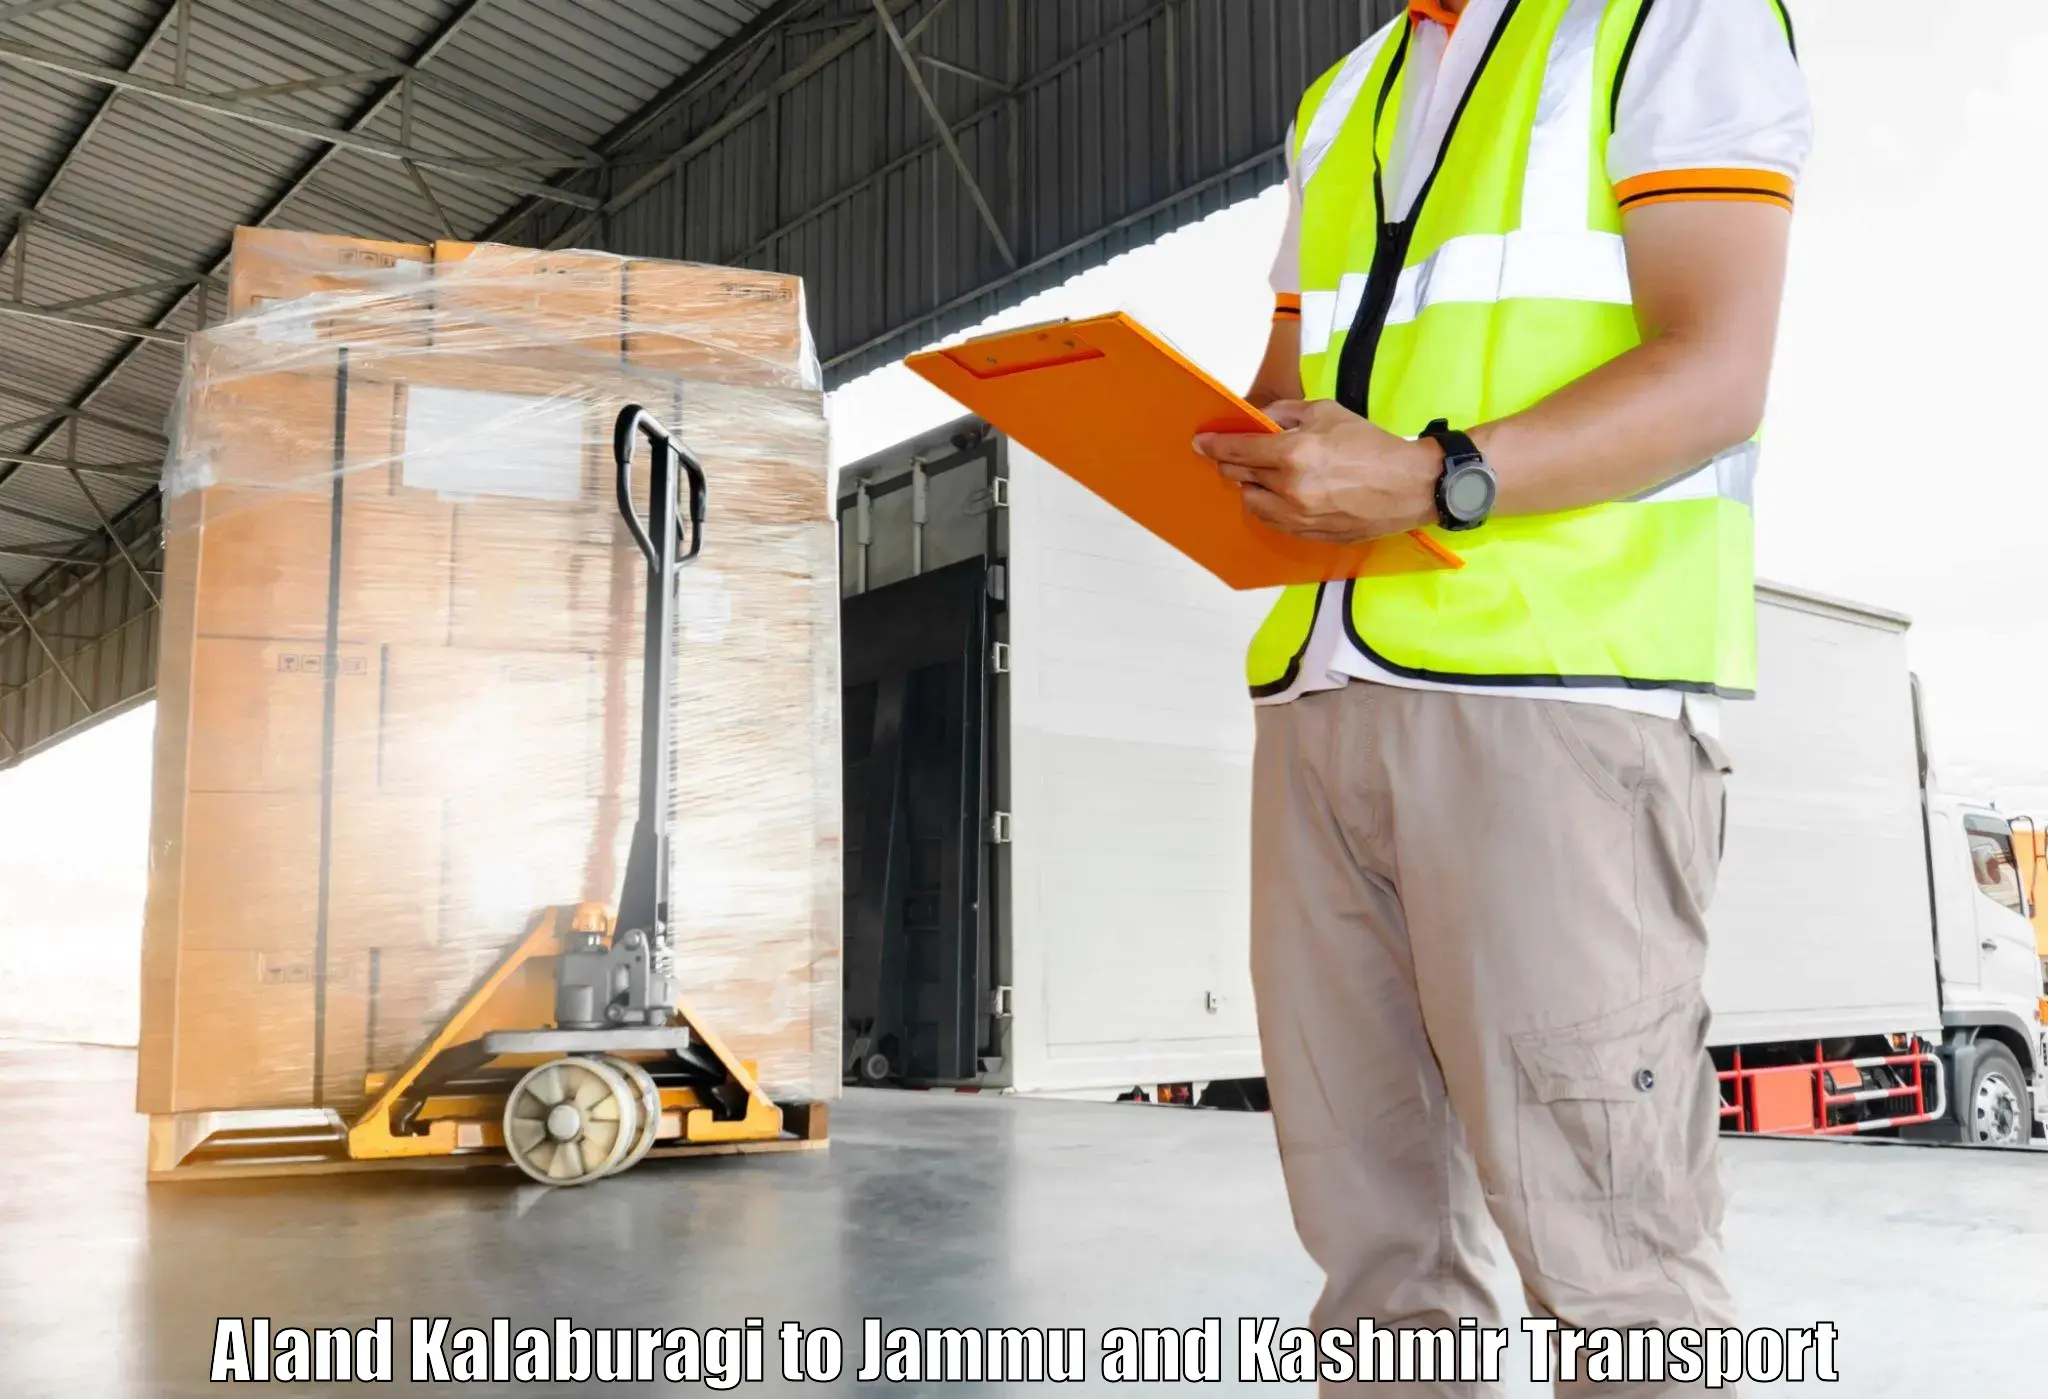 Daily parcel service transport Aland Kalaburagi to Anantnag